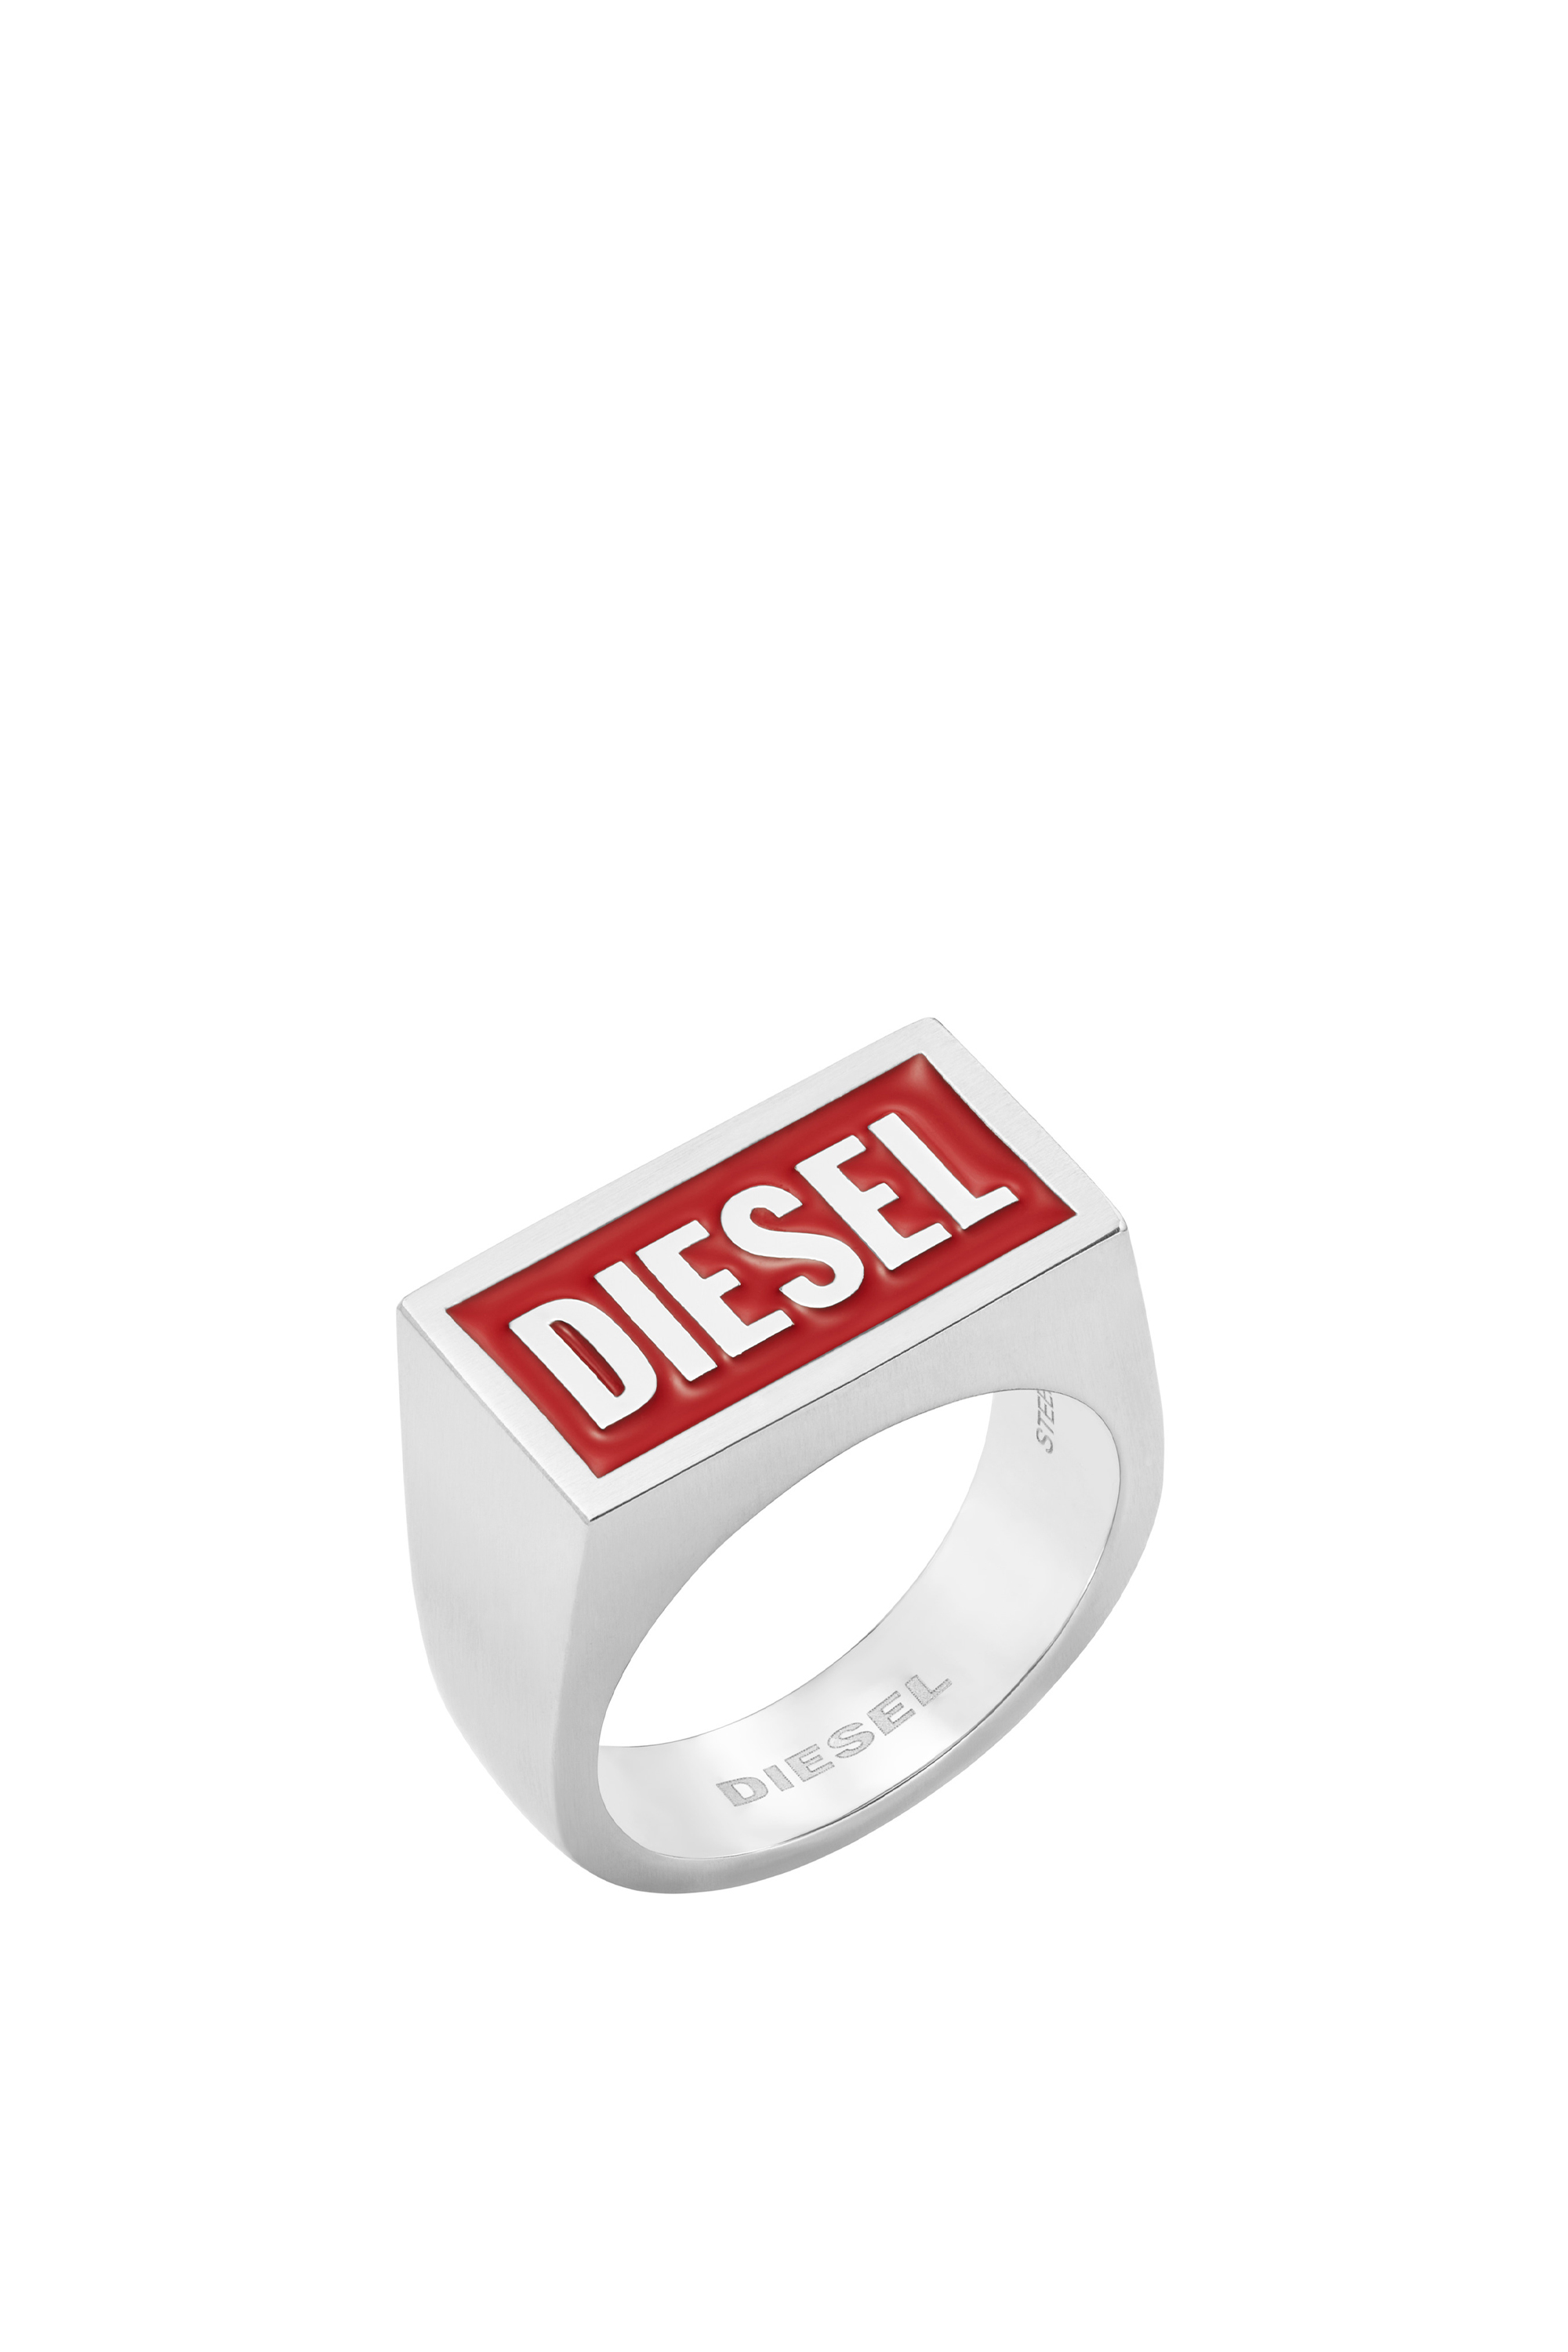 Diesel - Logoring aus Edelstahl - Ringe - Herren - Silber